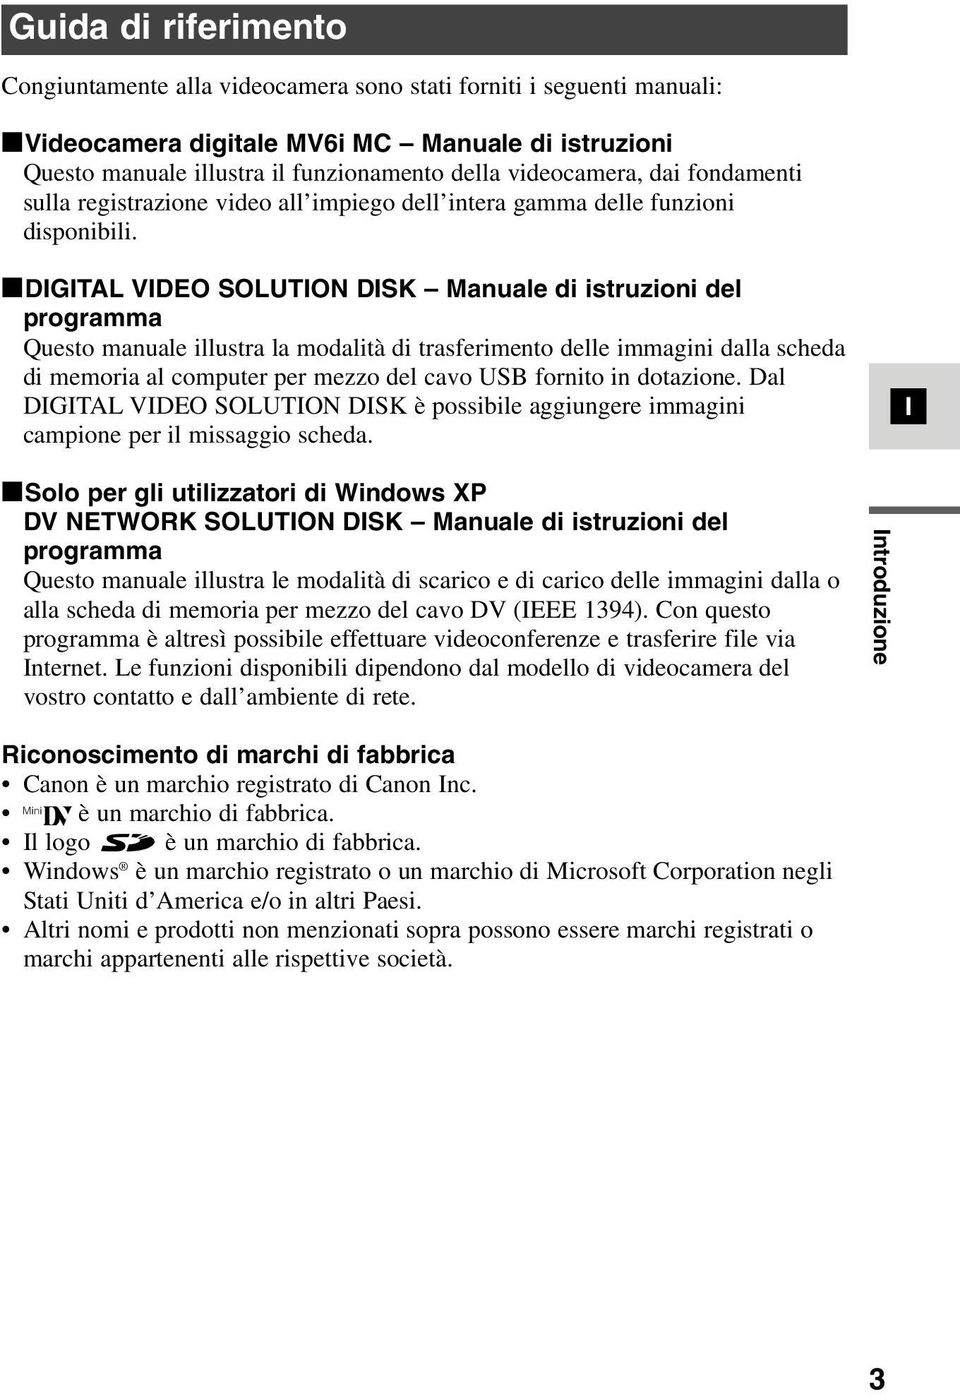 3DGTAL VDEO SOLUTON DSK Manuale di istruzioni del programma Questo manuale illustra la modalità di trasferimento delle immagini dalla scheda di memoria al computer per mezzo del cavo USB fornito in